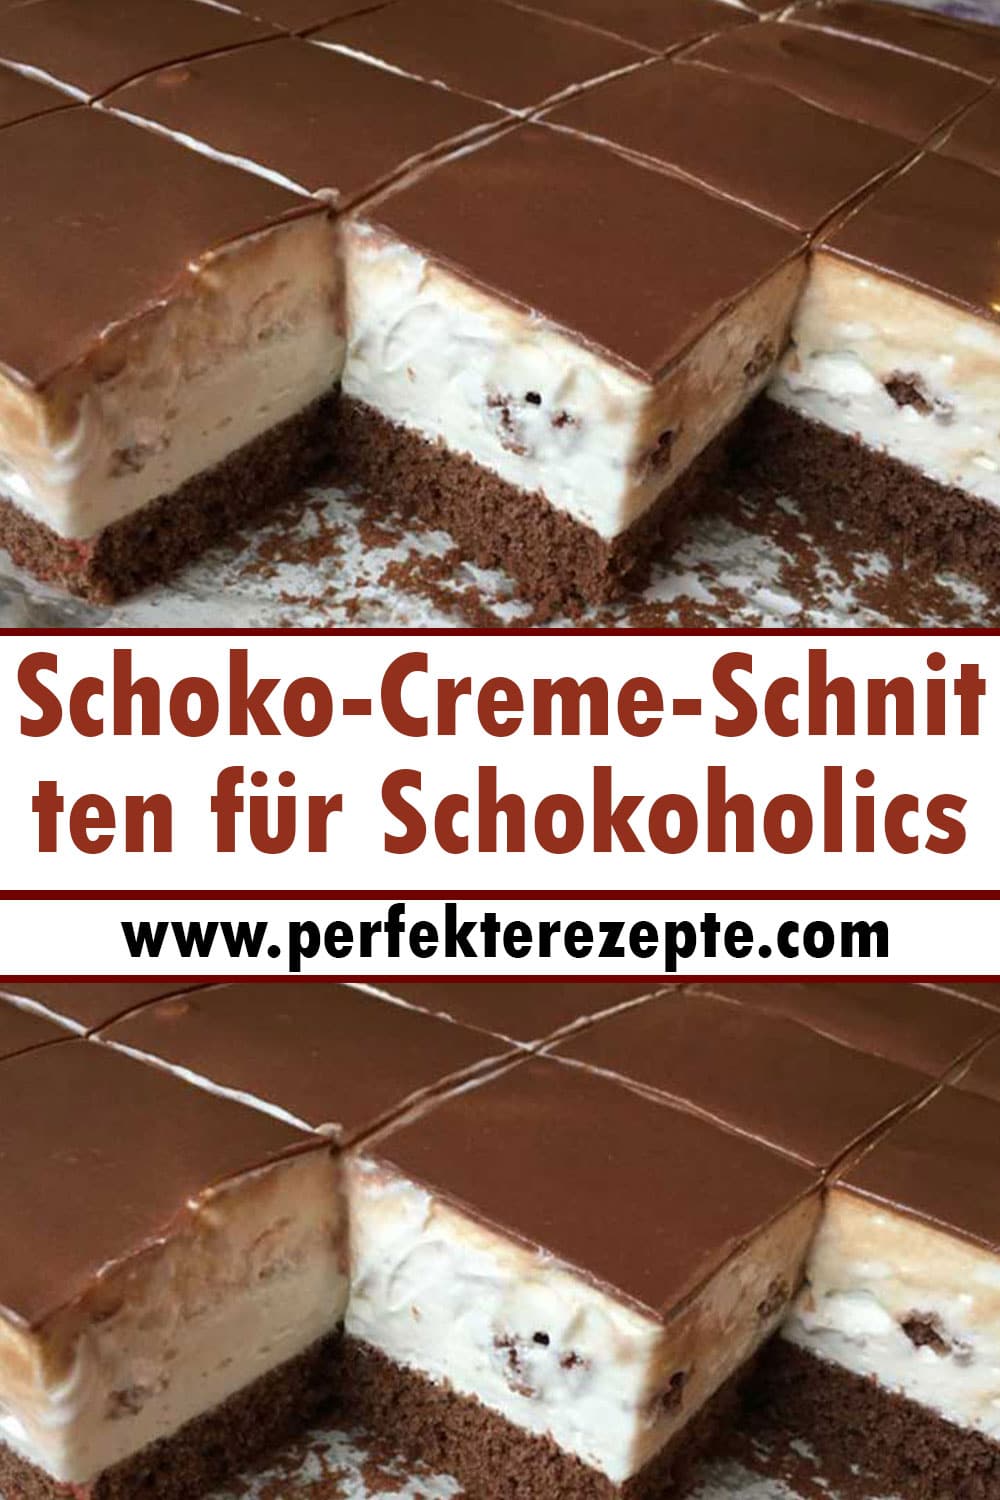 Schoko-Creme-Schnitten für Schokoholics (Tassenrezept)